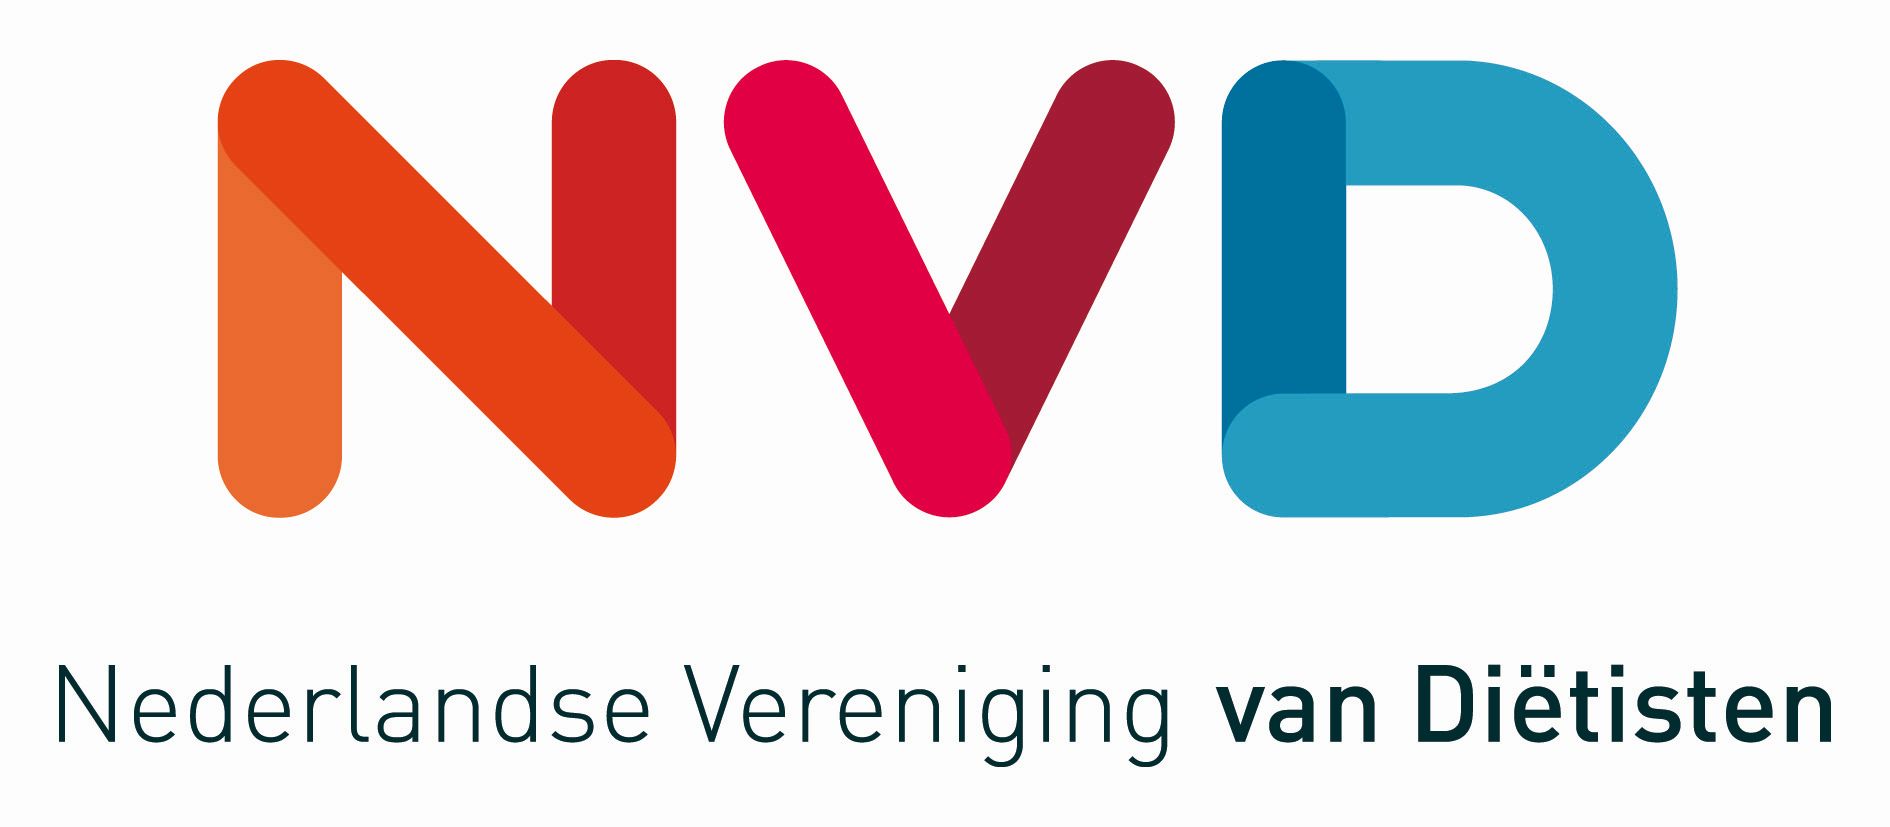 Diëtistenpraktijk Deckers - Lid van de NVD, Nederlandse vereniging van diëtisten